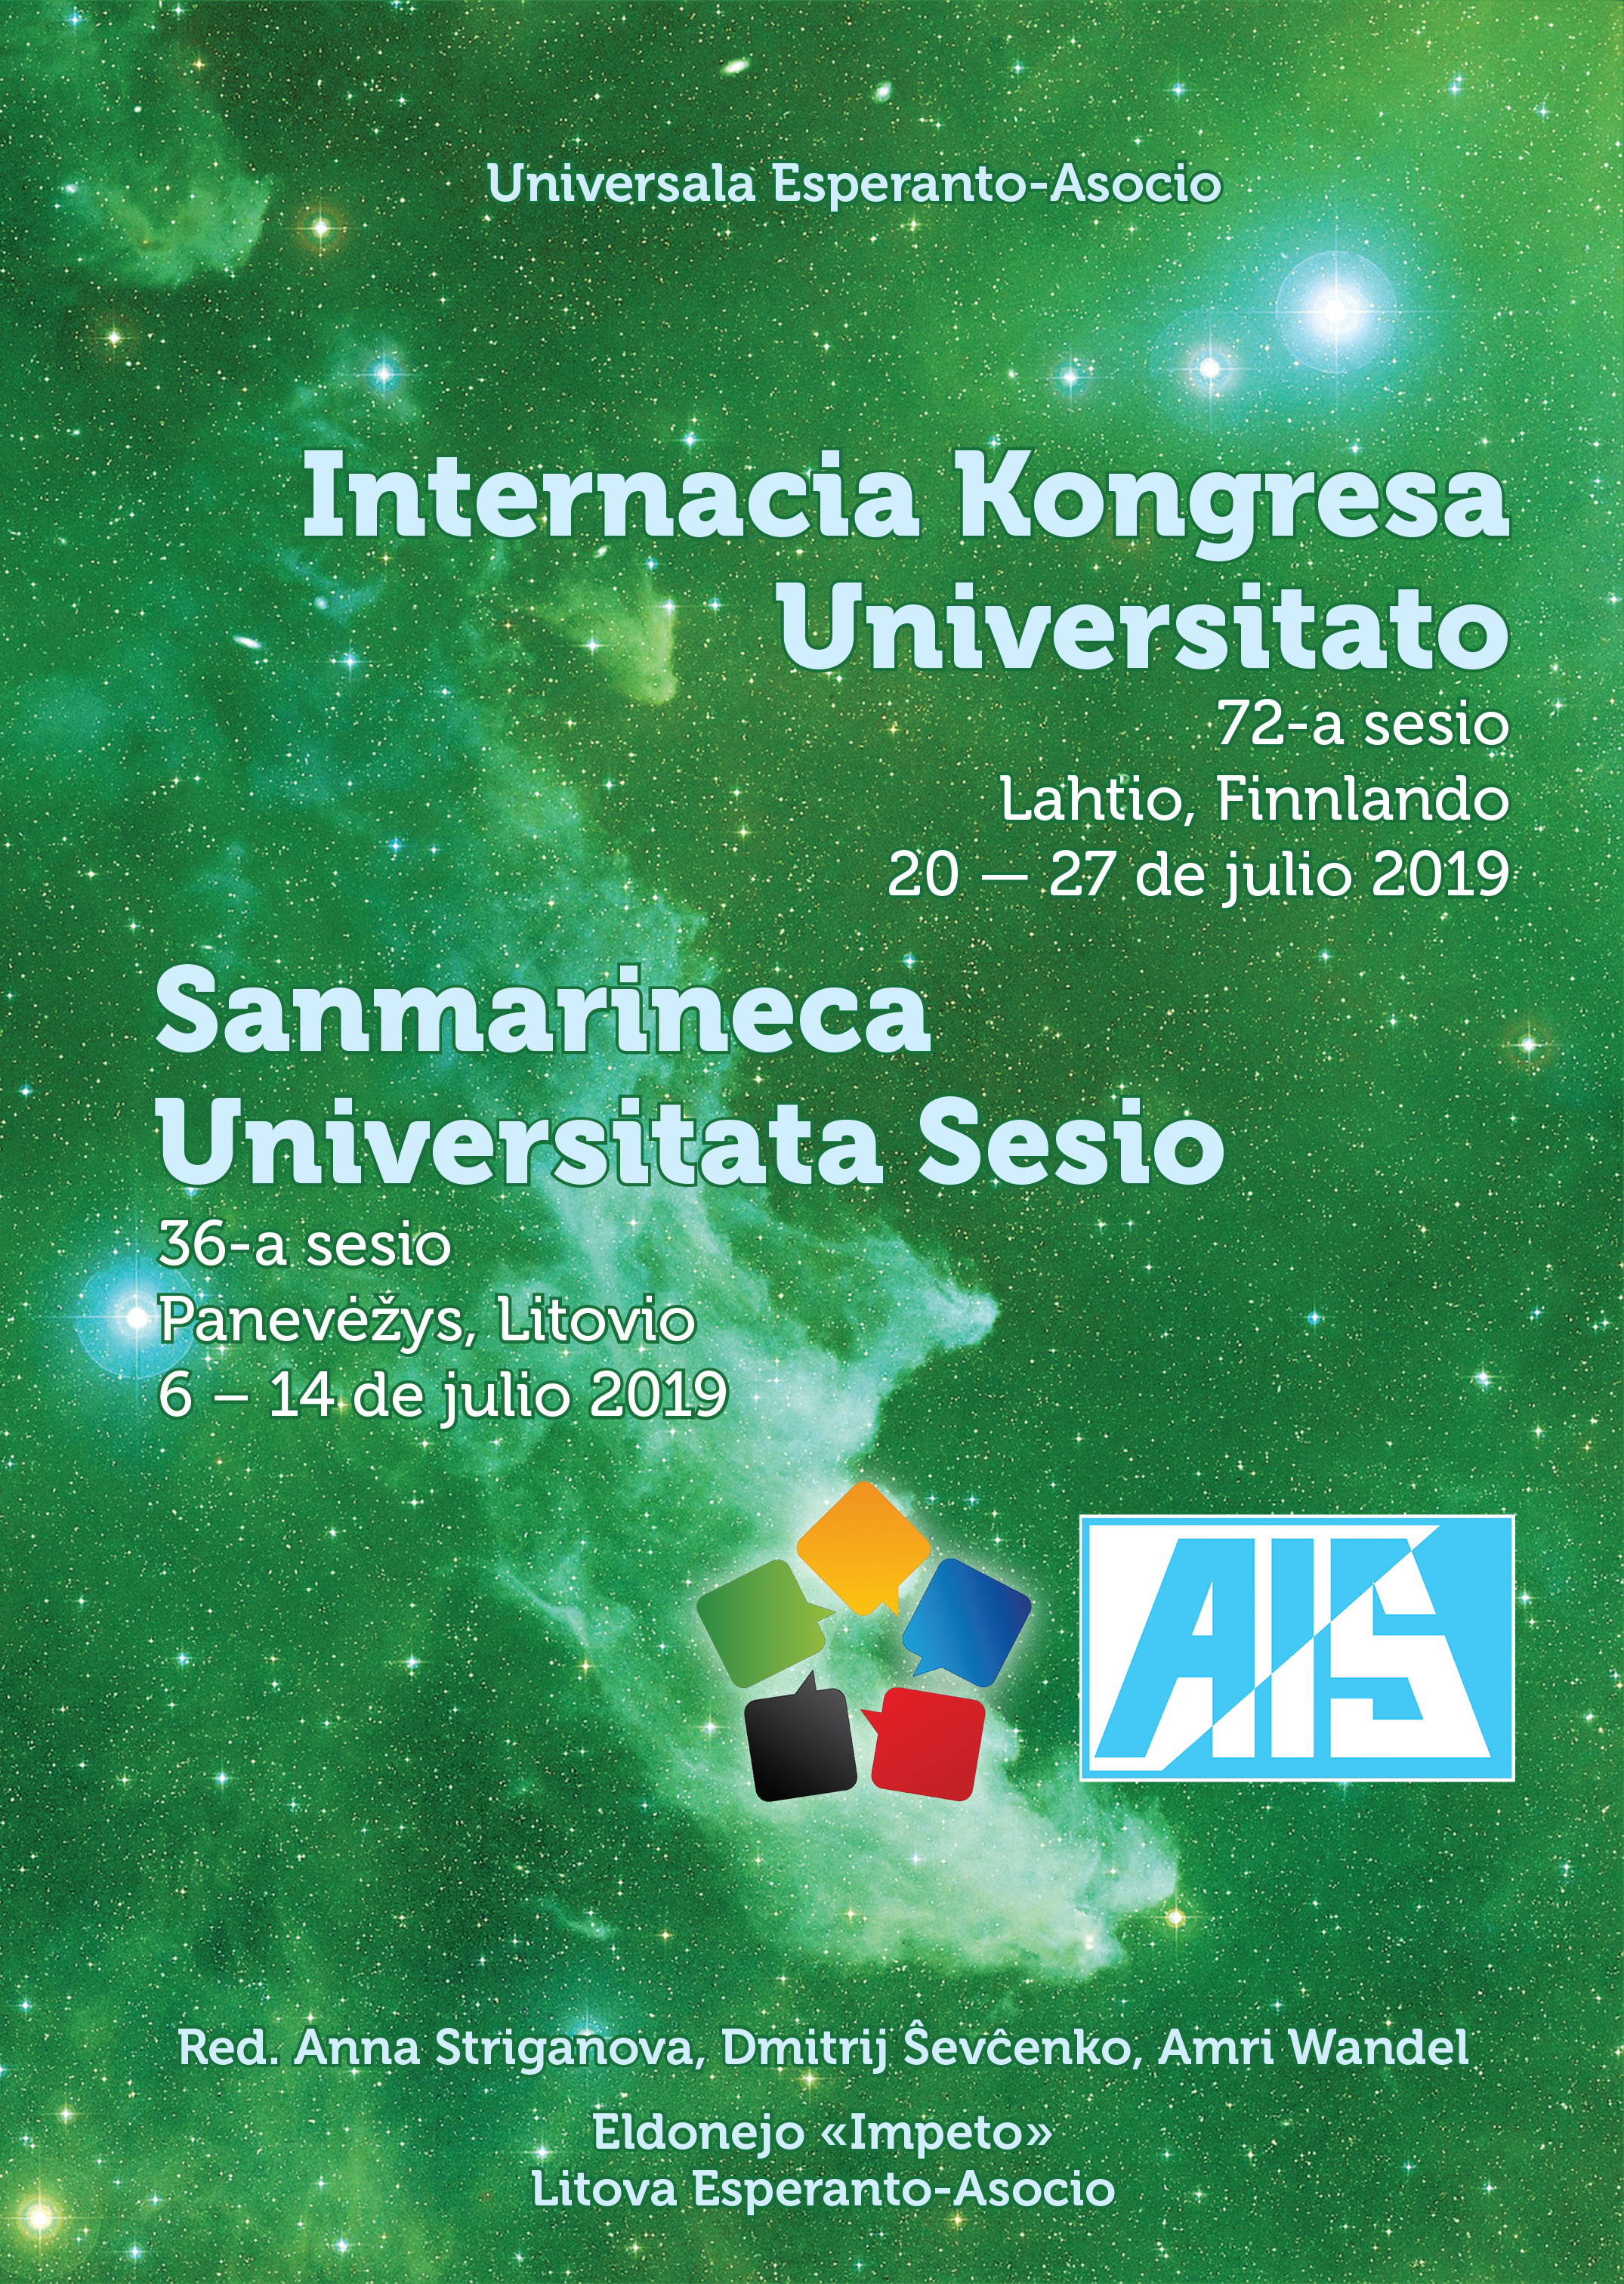 Internacia Kongresa Universitato 2019 / Sanmarineca Universitata Sesio 2019